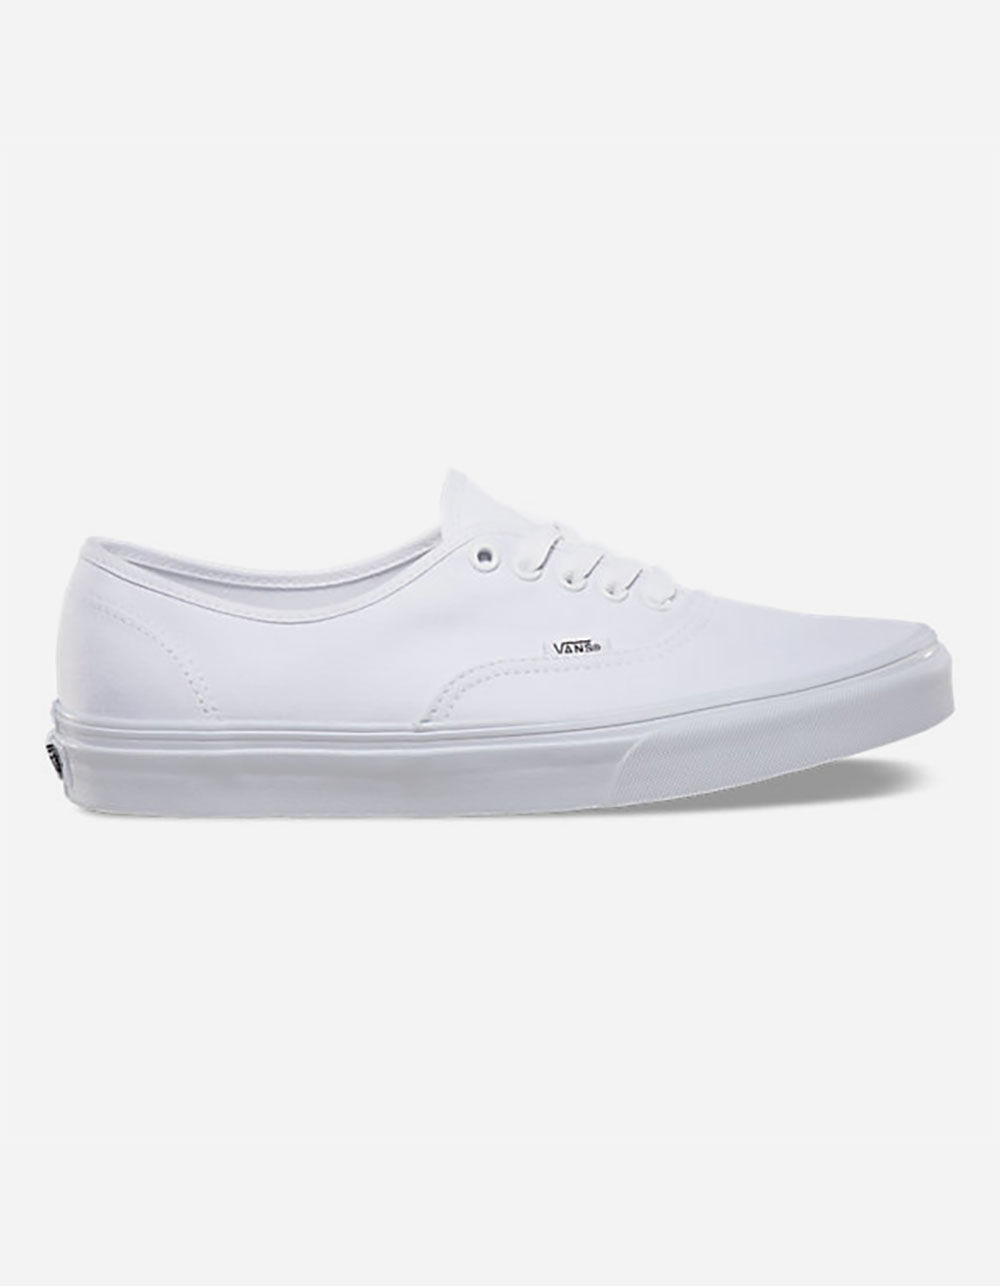 above Baffle Complaint VANS Authentic True White Shoes - WHITE | Tillys